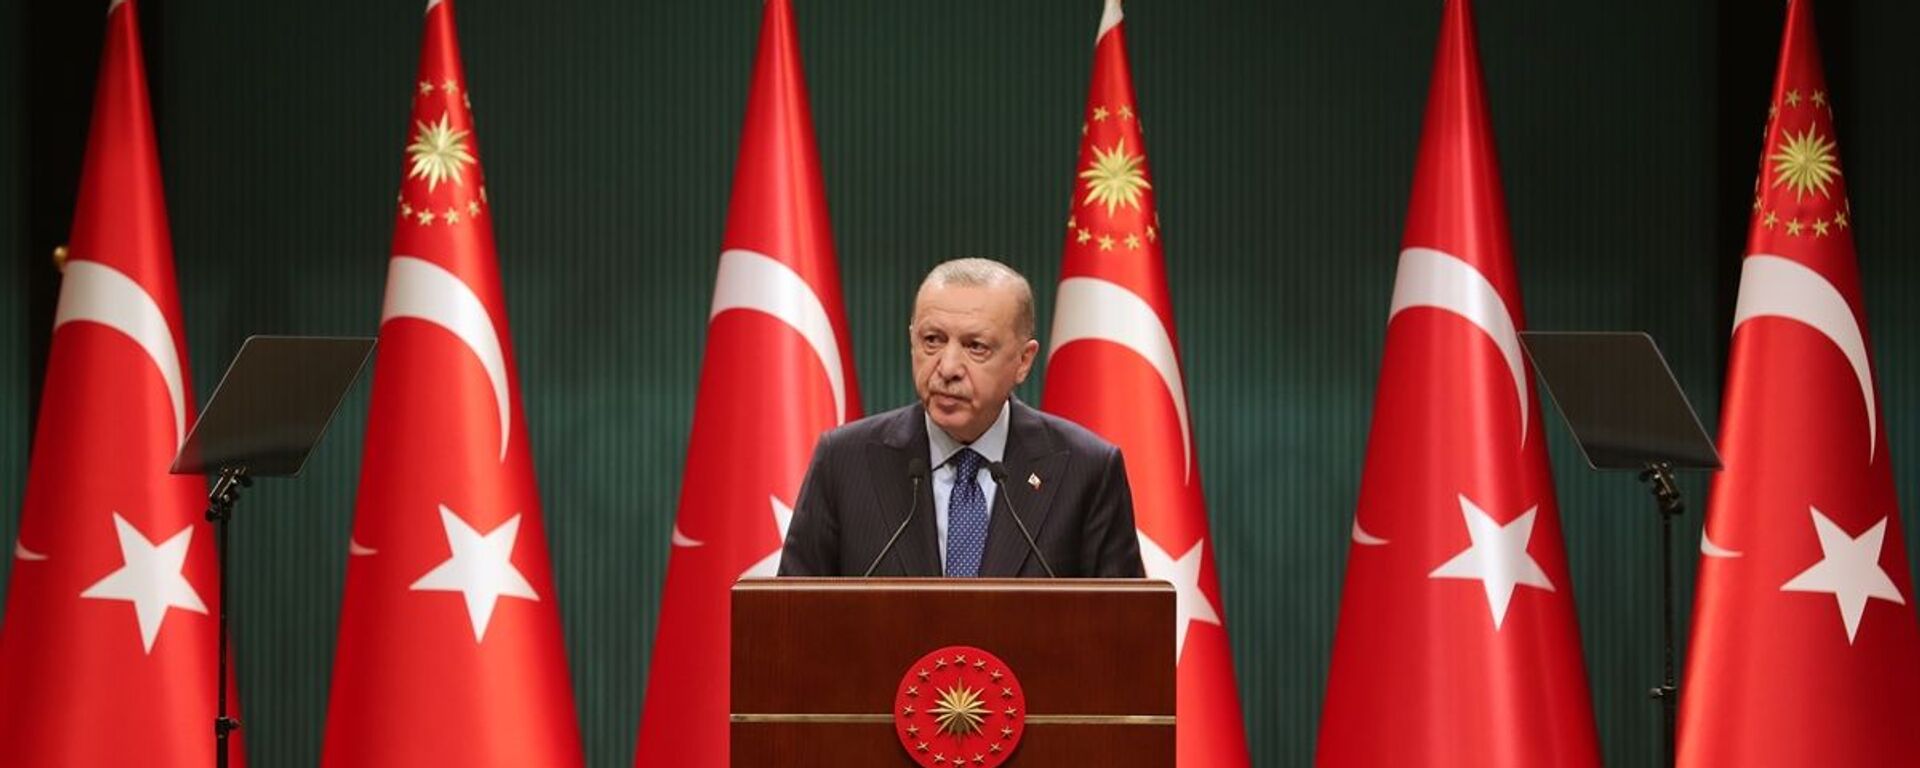 Türkiye Cumhurbaşkanı Recep Tayyip Erdoğan, Cumhurbaşkanlığı Kabine Toplantısı'nın ardından açıklamalarda bulundu. - Sputnik Türkiye, 1920, 01.03.2021